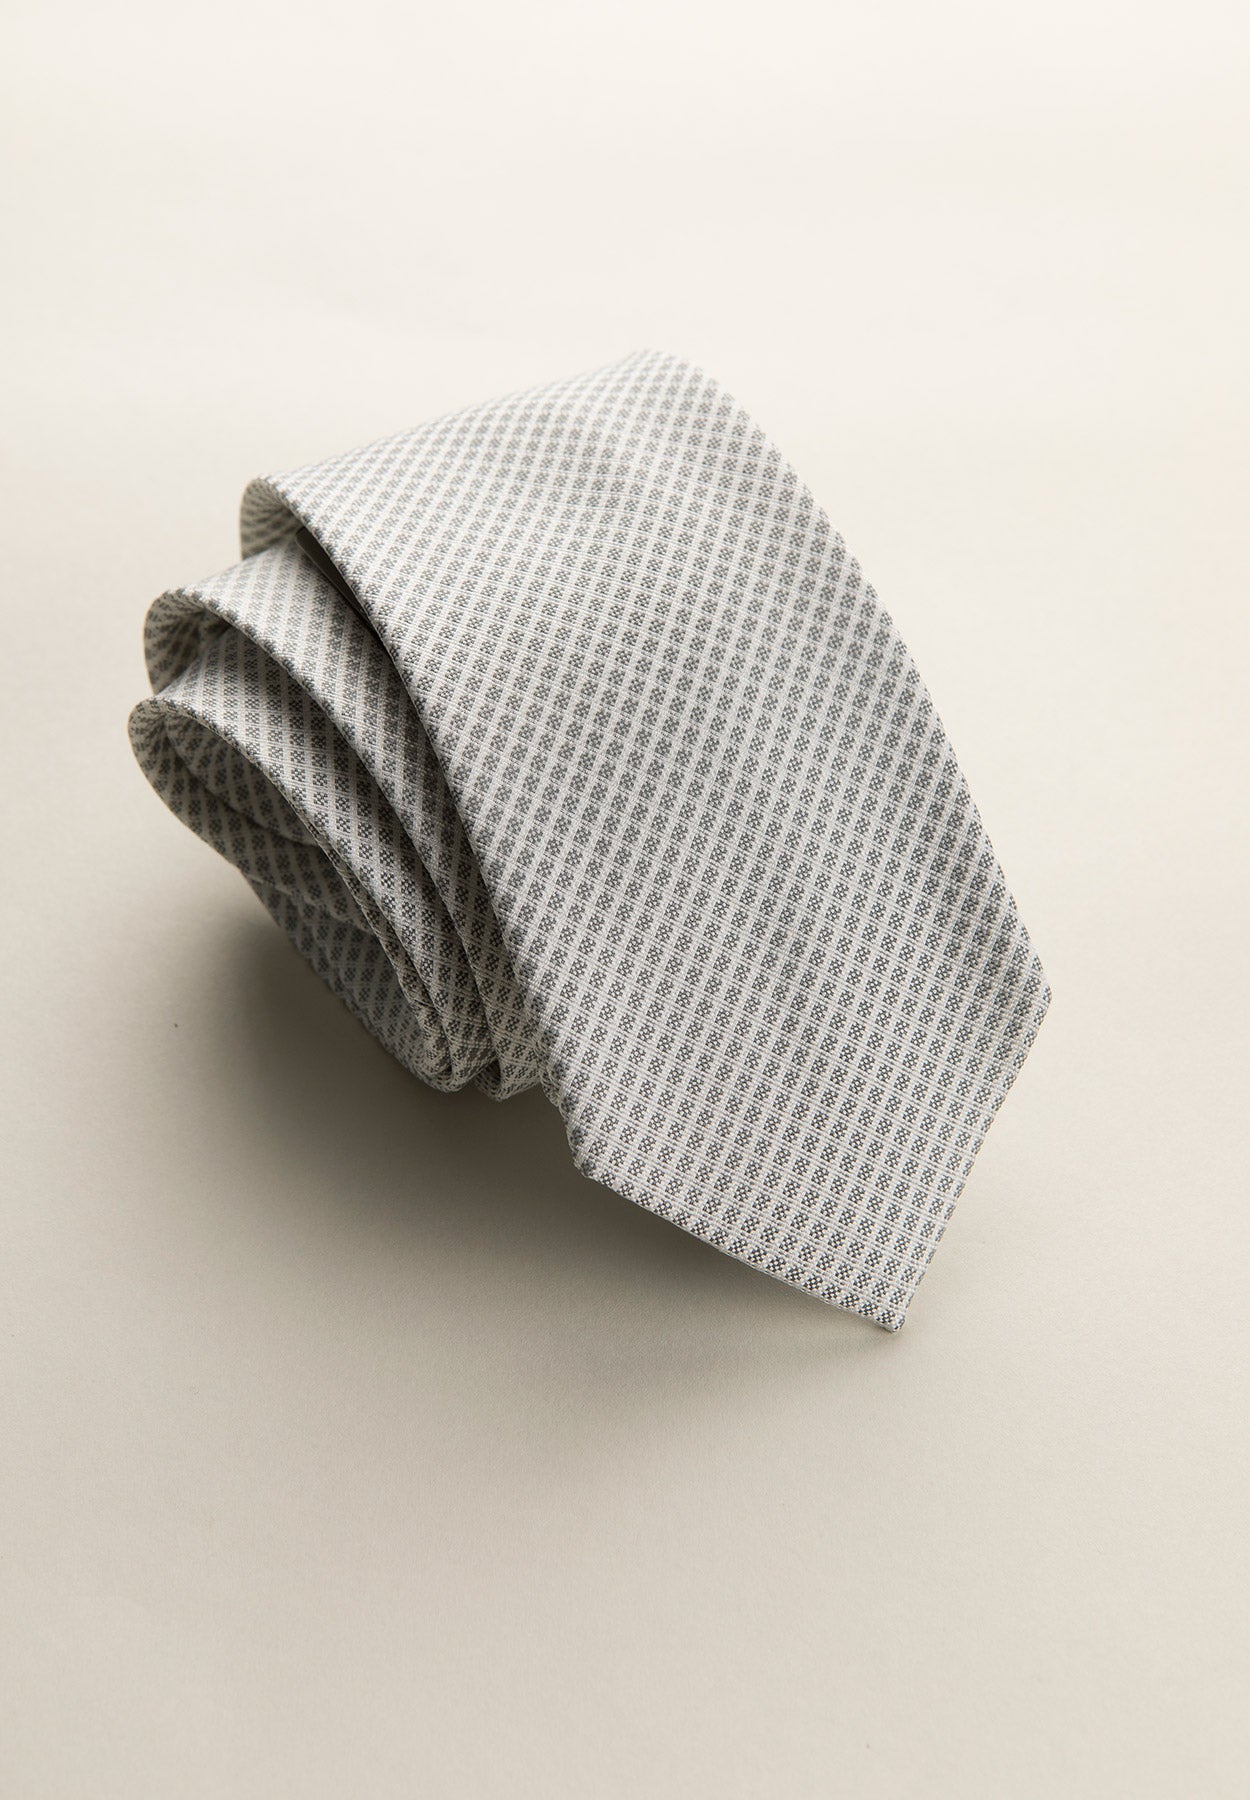 Cravatta grigio perla armatura diagonale seta